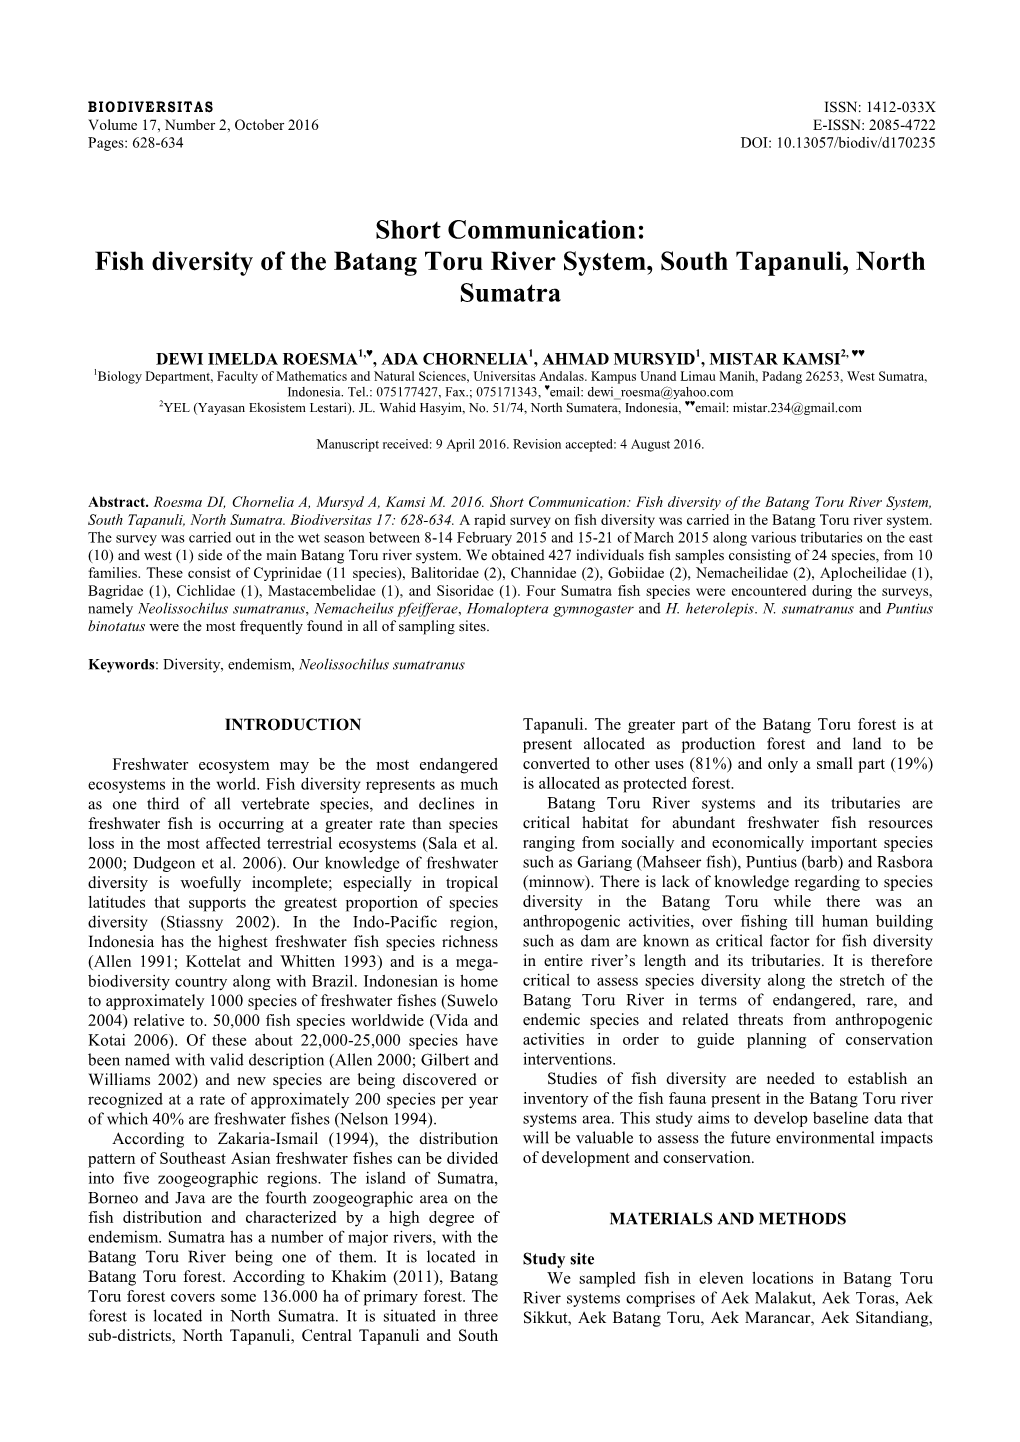 Fish Diversity of the Batang Toru River System, South Tapanuli, North Sumatra